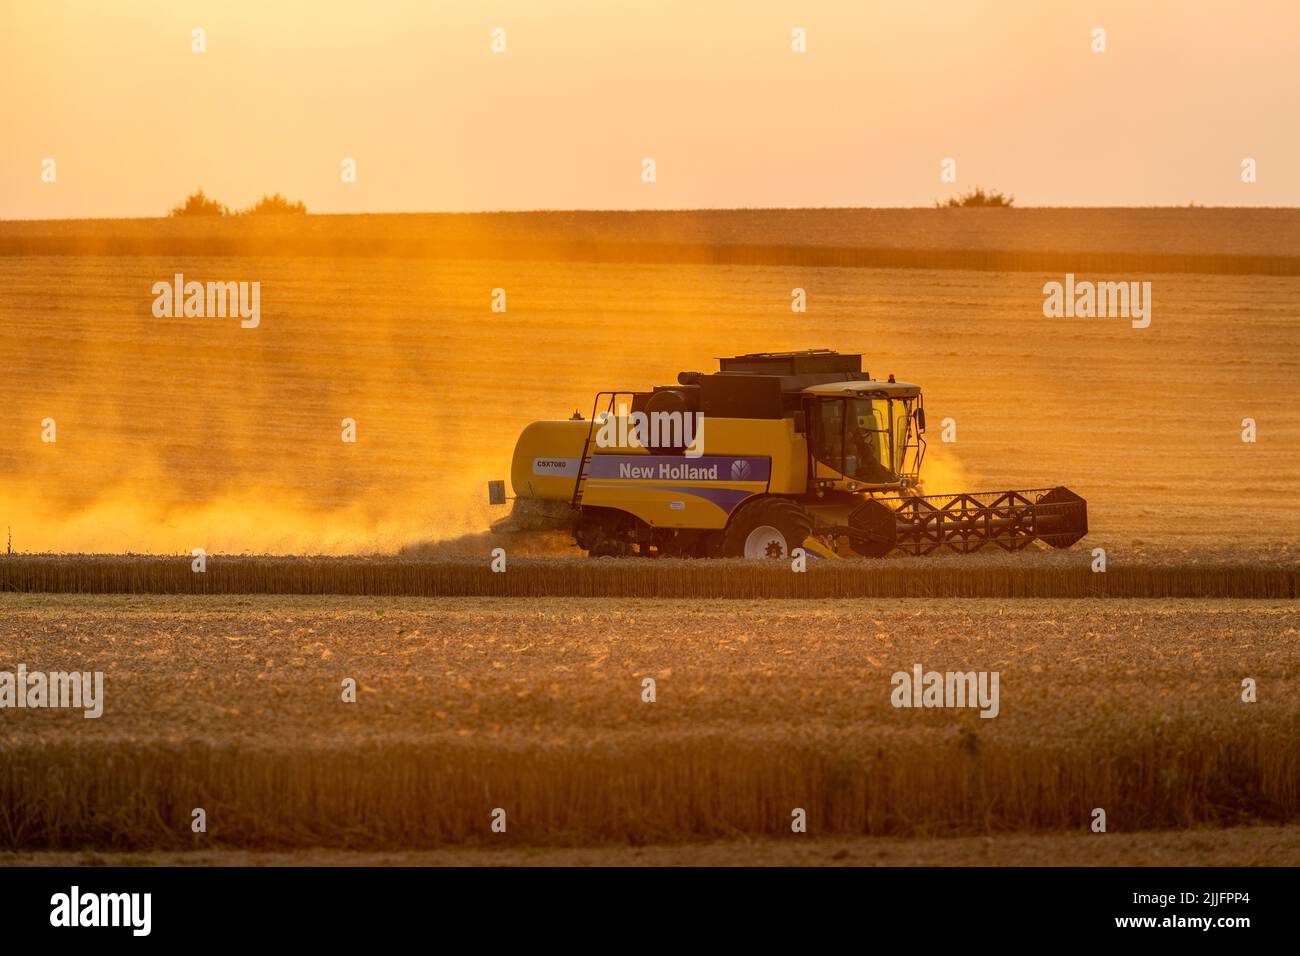 Cosecha de trigo en curso con cosechadoras. Puesta de sol iluminando el polvo levantado. Foto de stock